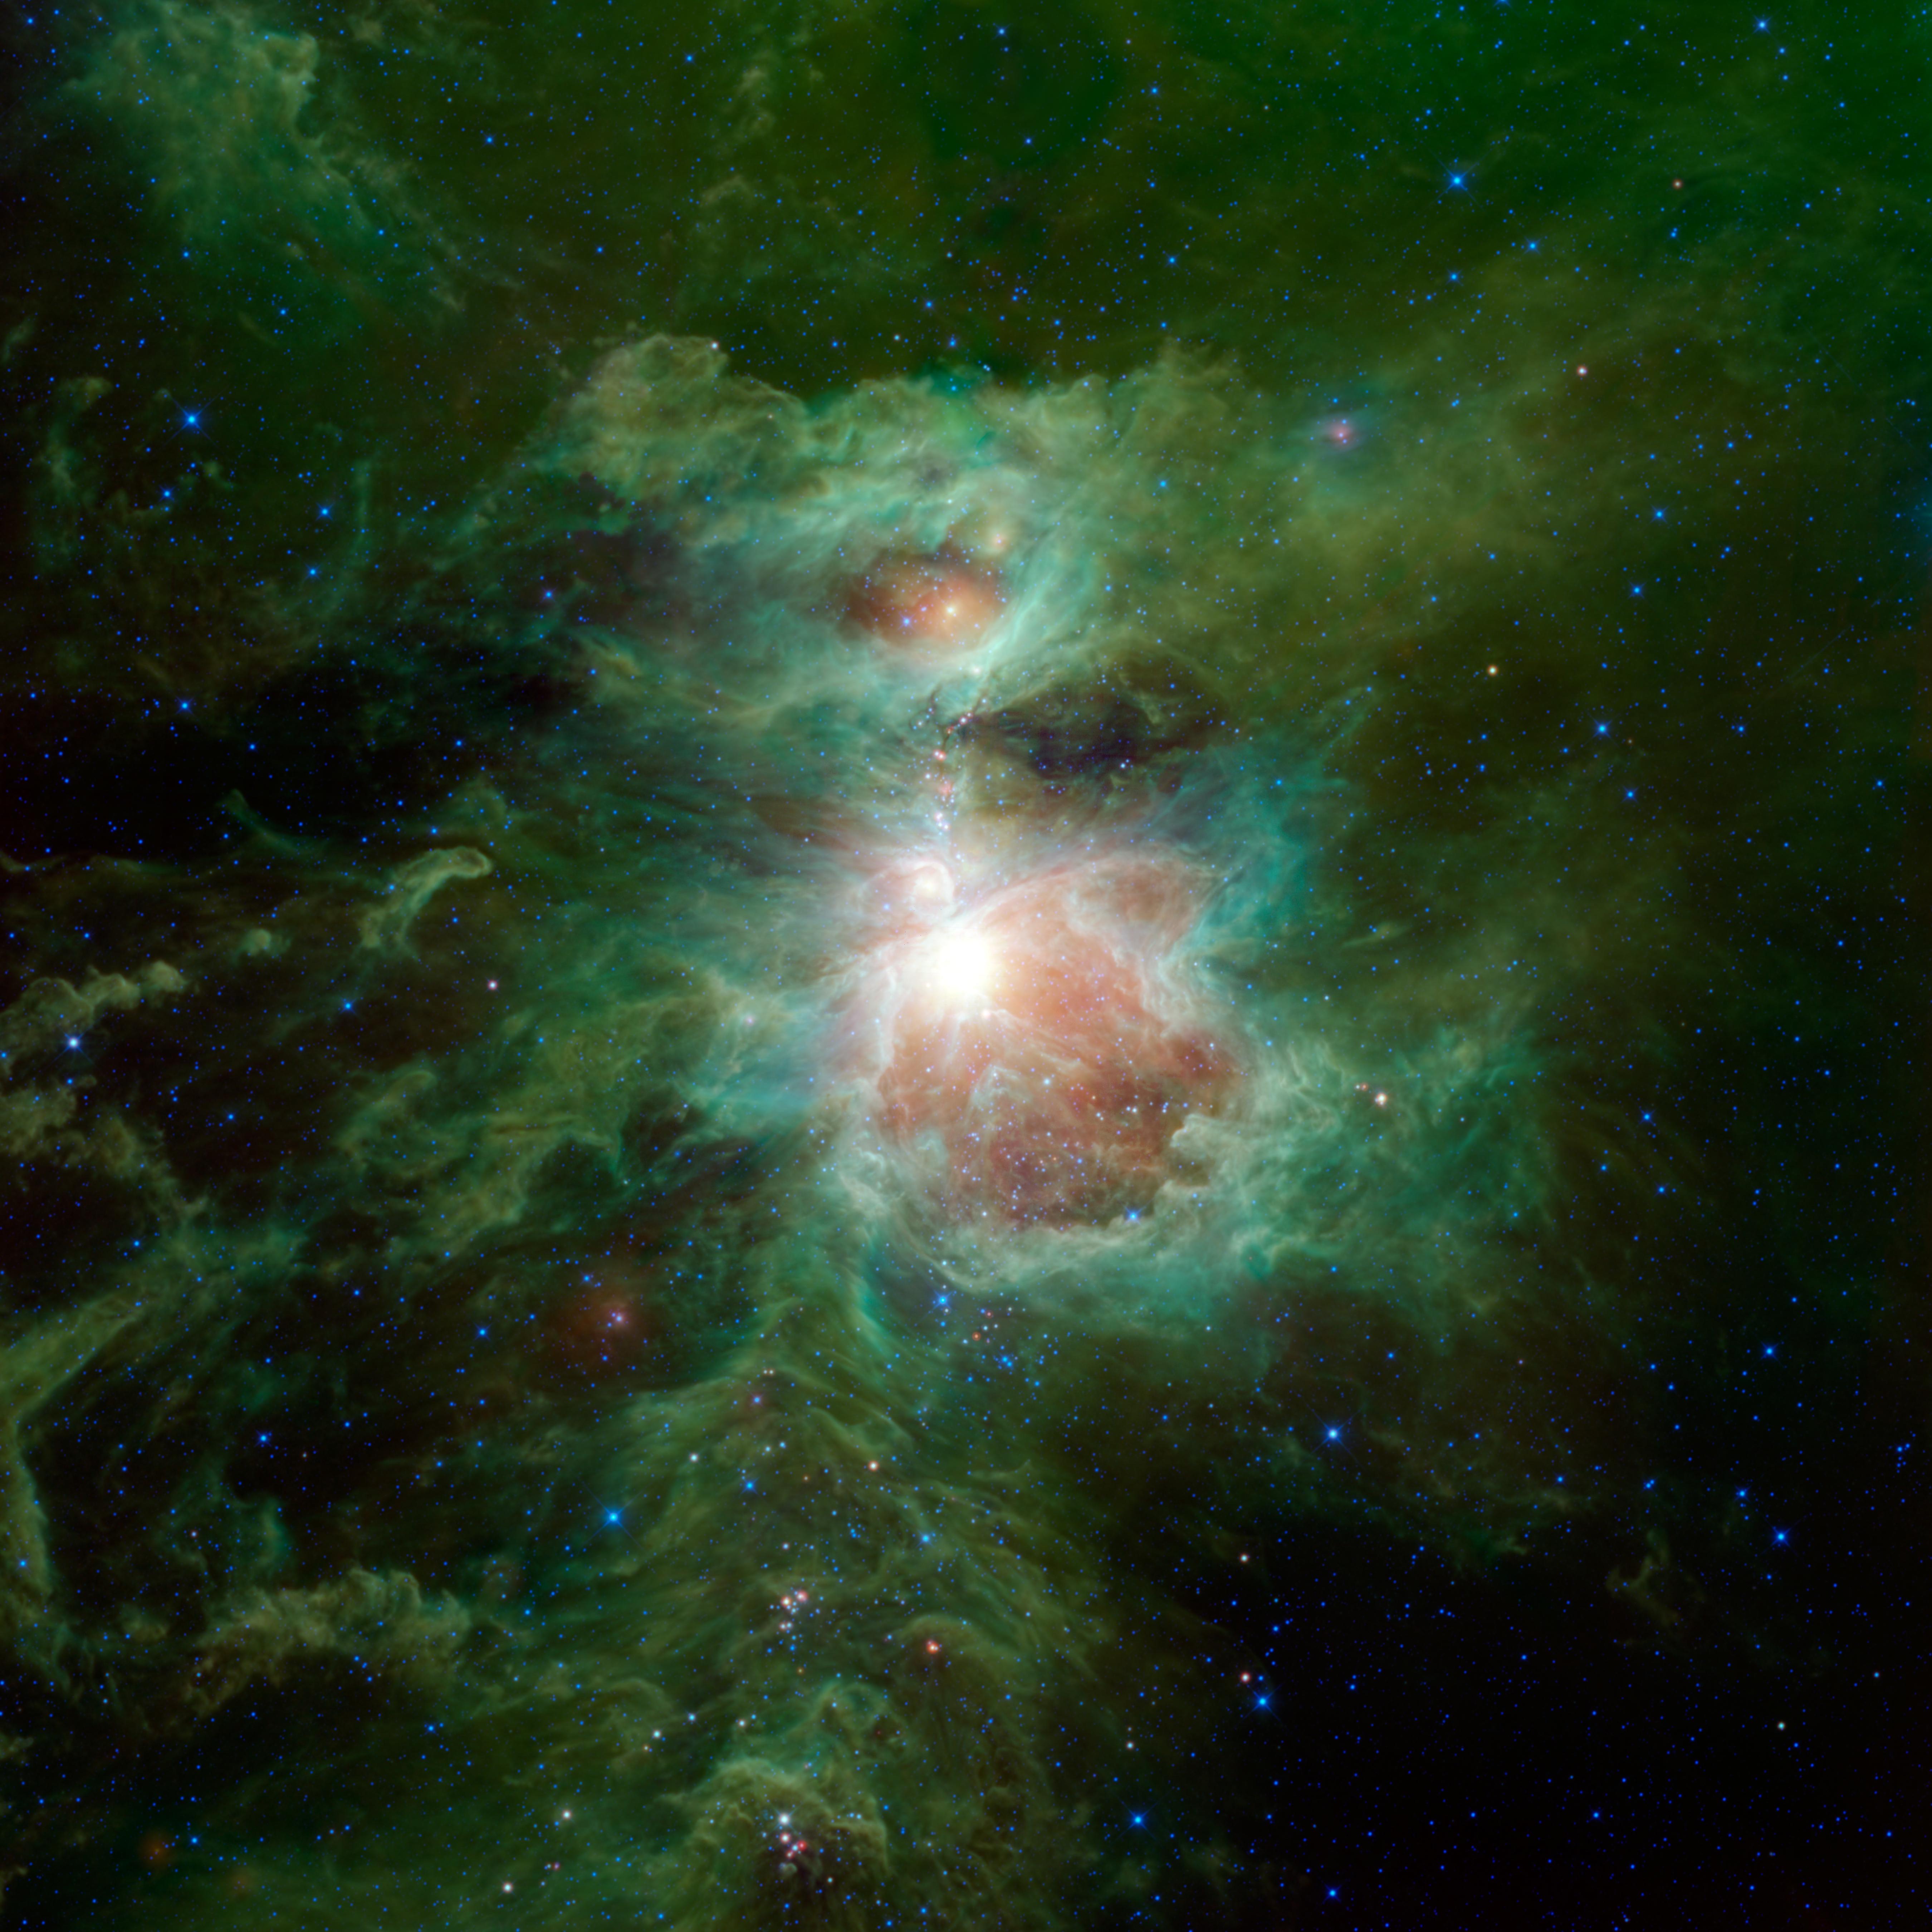 Orion en infrarouge par WISE